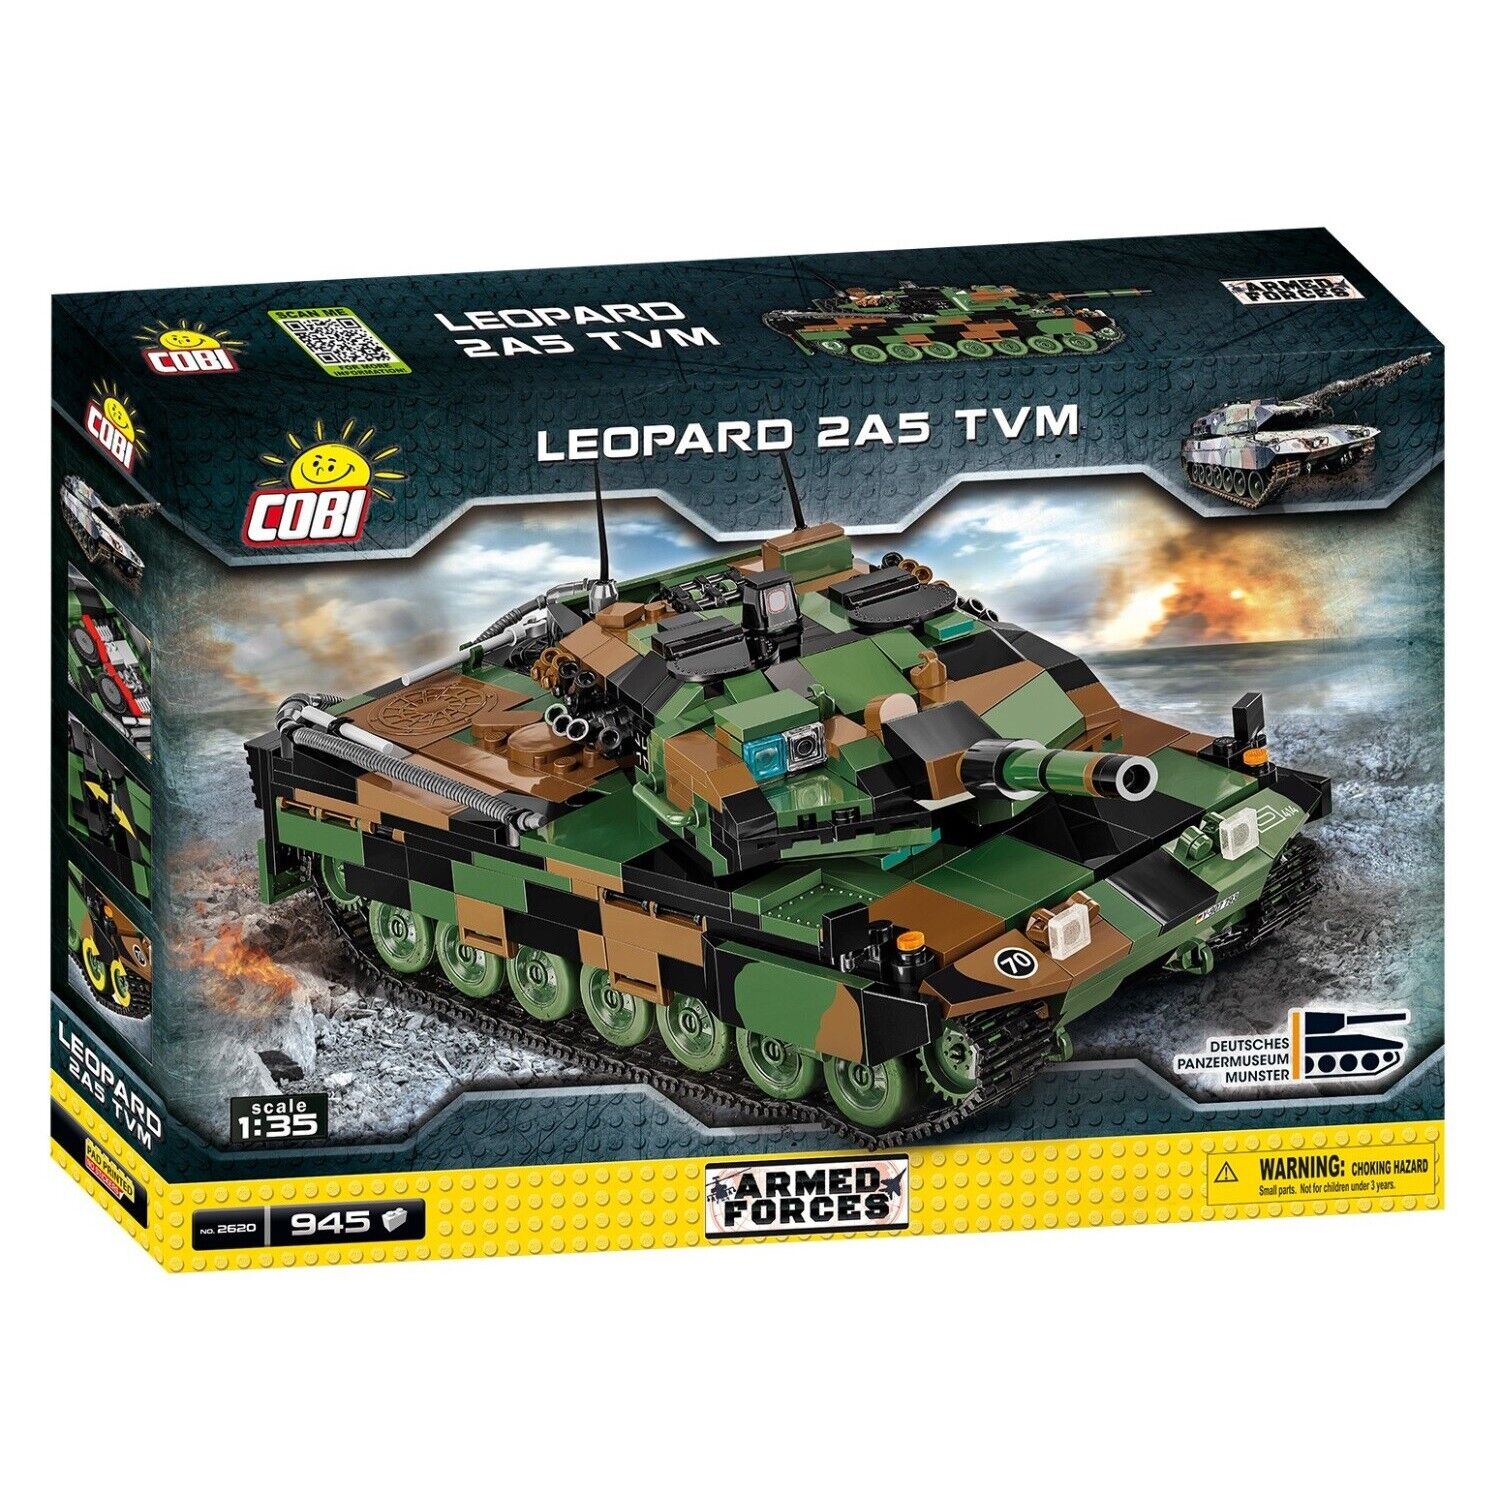 Cobi 2620 Leopard 2A5 TVM Armed Forces Tank Panzer-Modell Bausteinsatz Kinder